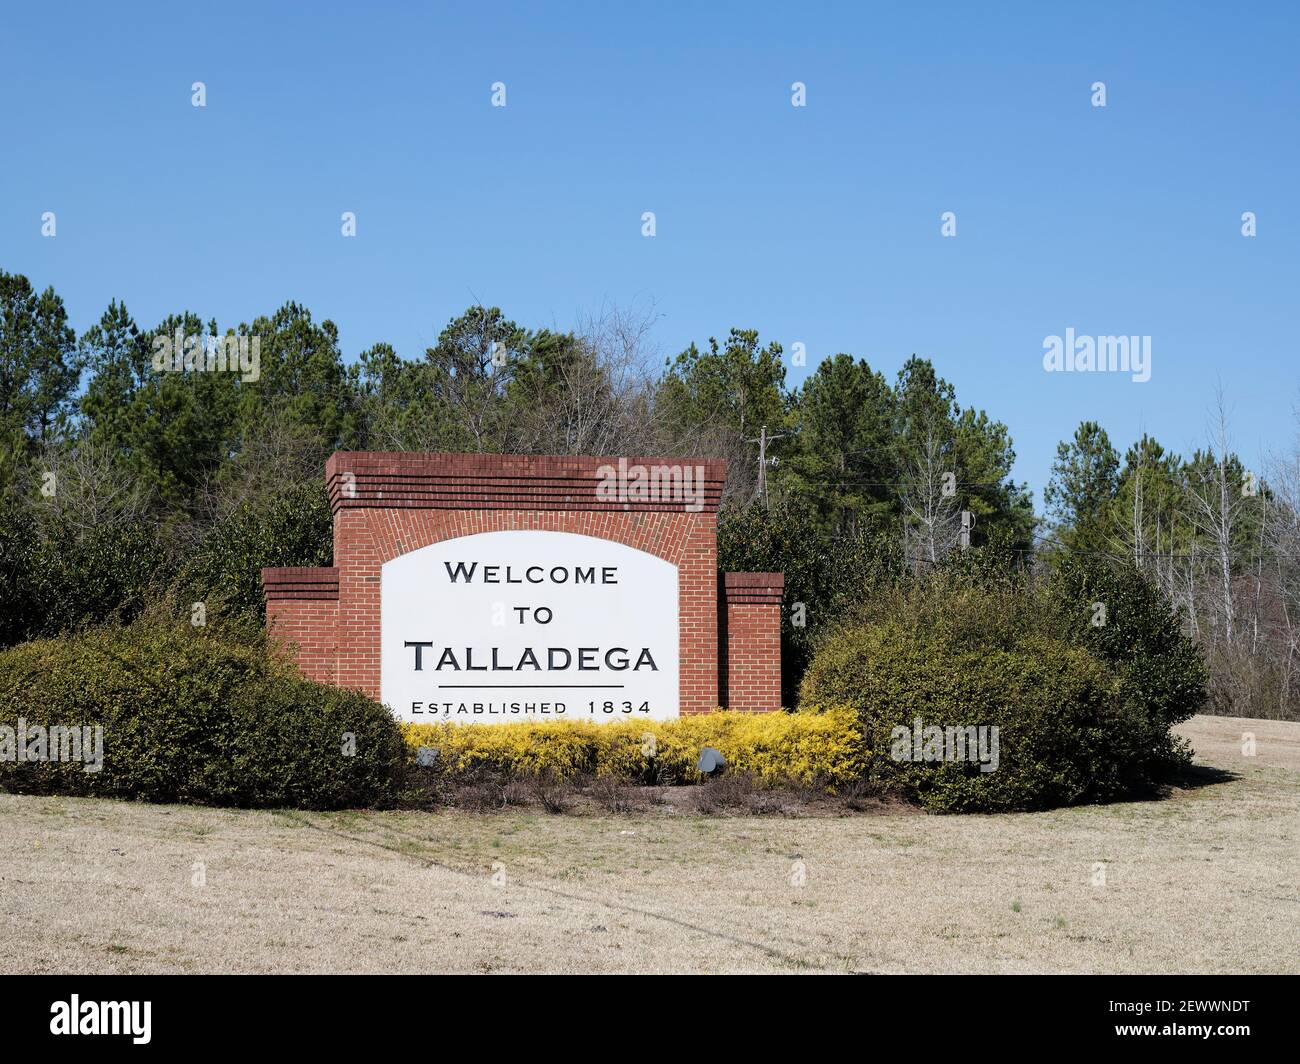 Talladega Alabama Willkommensschild in die Stadt Talladega. Stockfoto